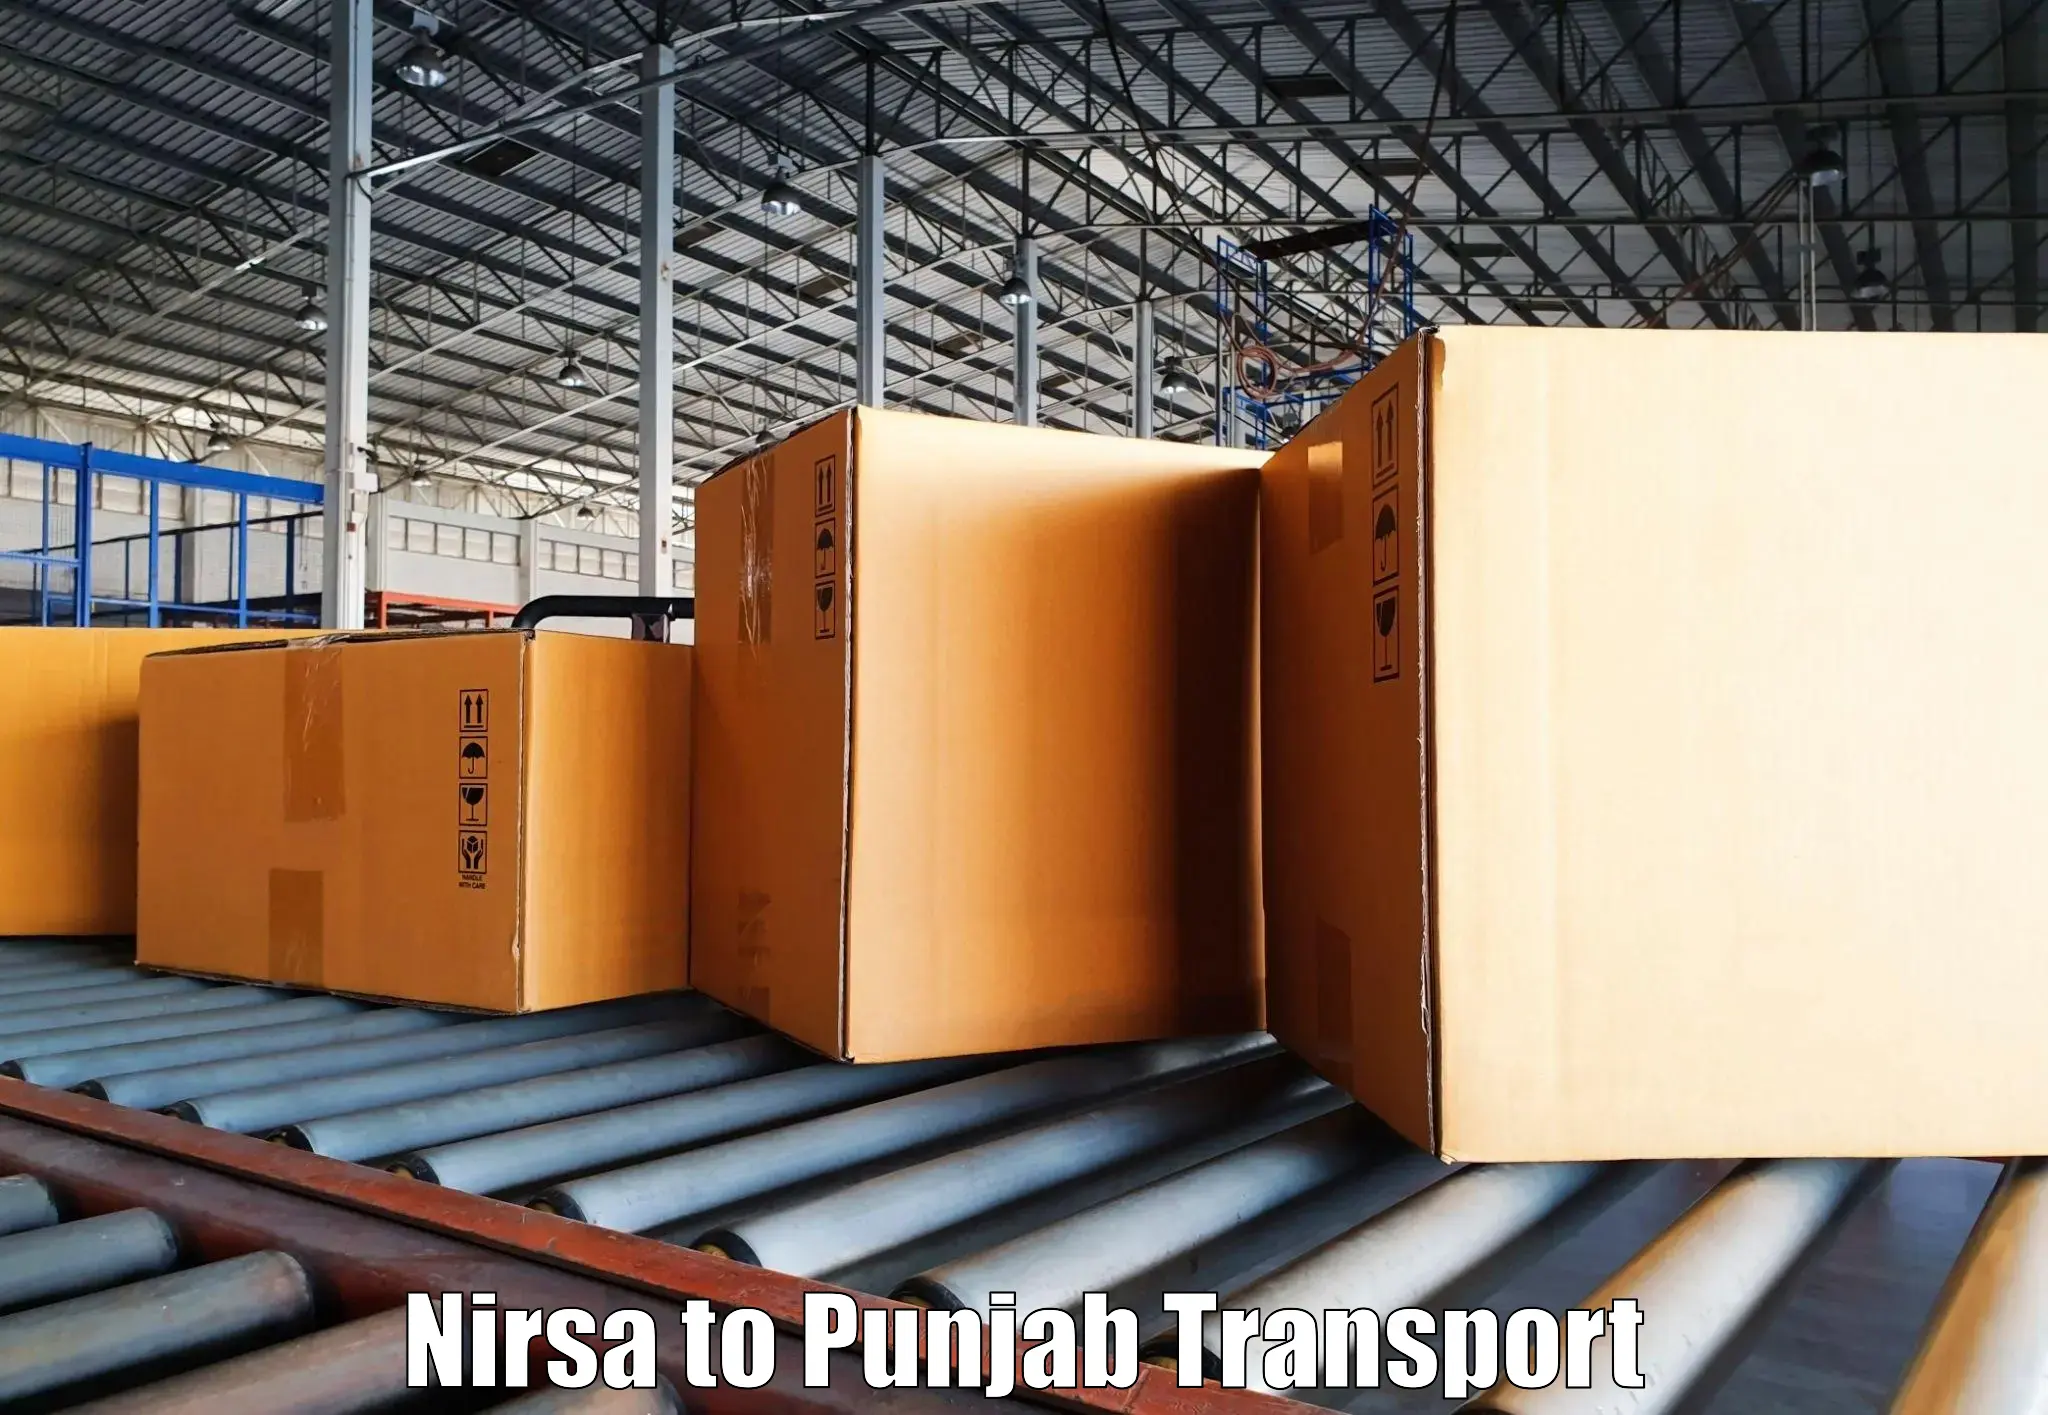 Daily transport service Nirsa to Punjab